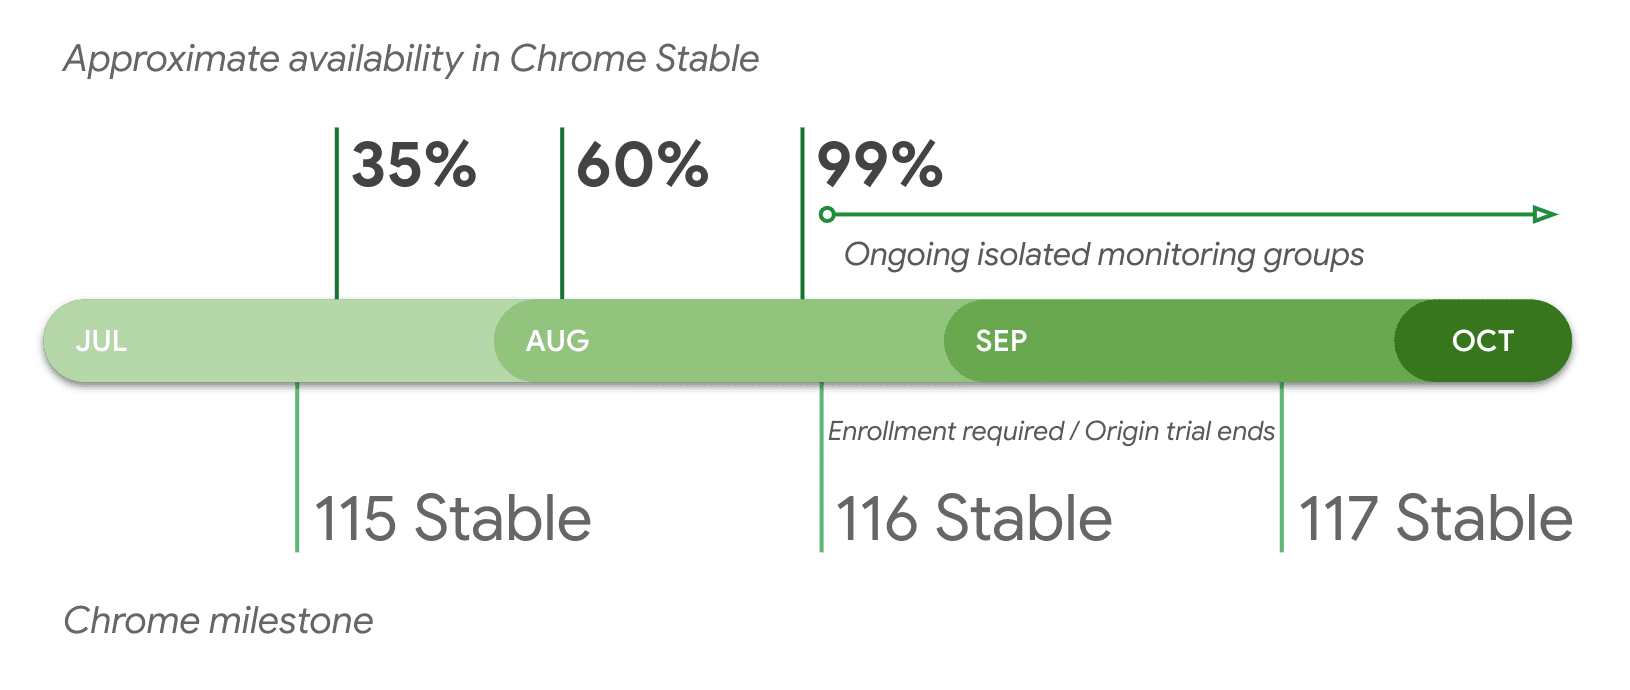 Disponibilità approssimativa nella versione stabile di Chrome per versione.